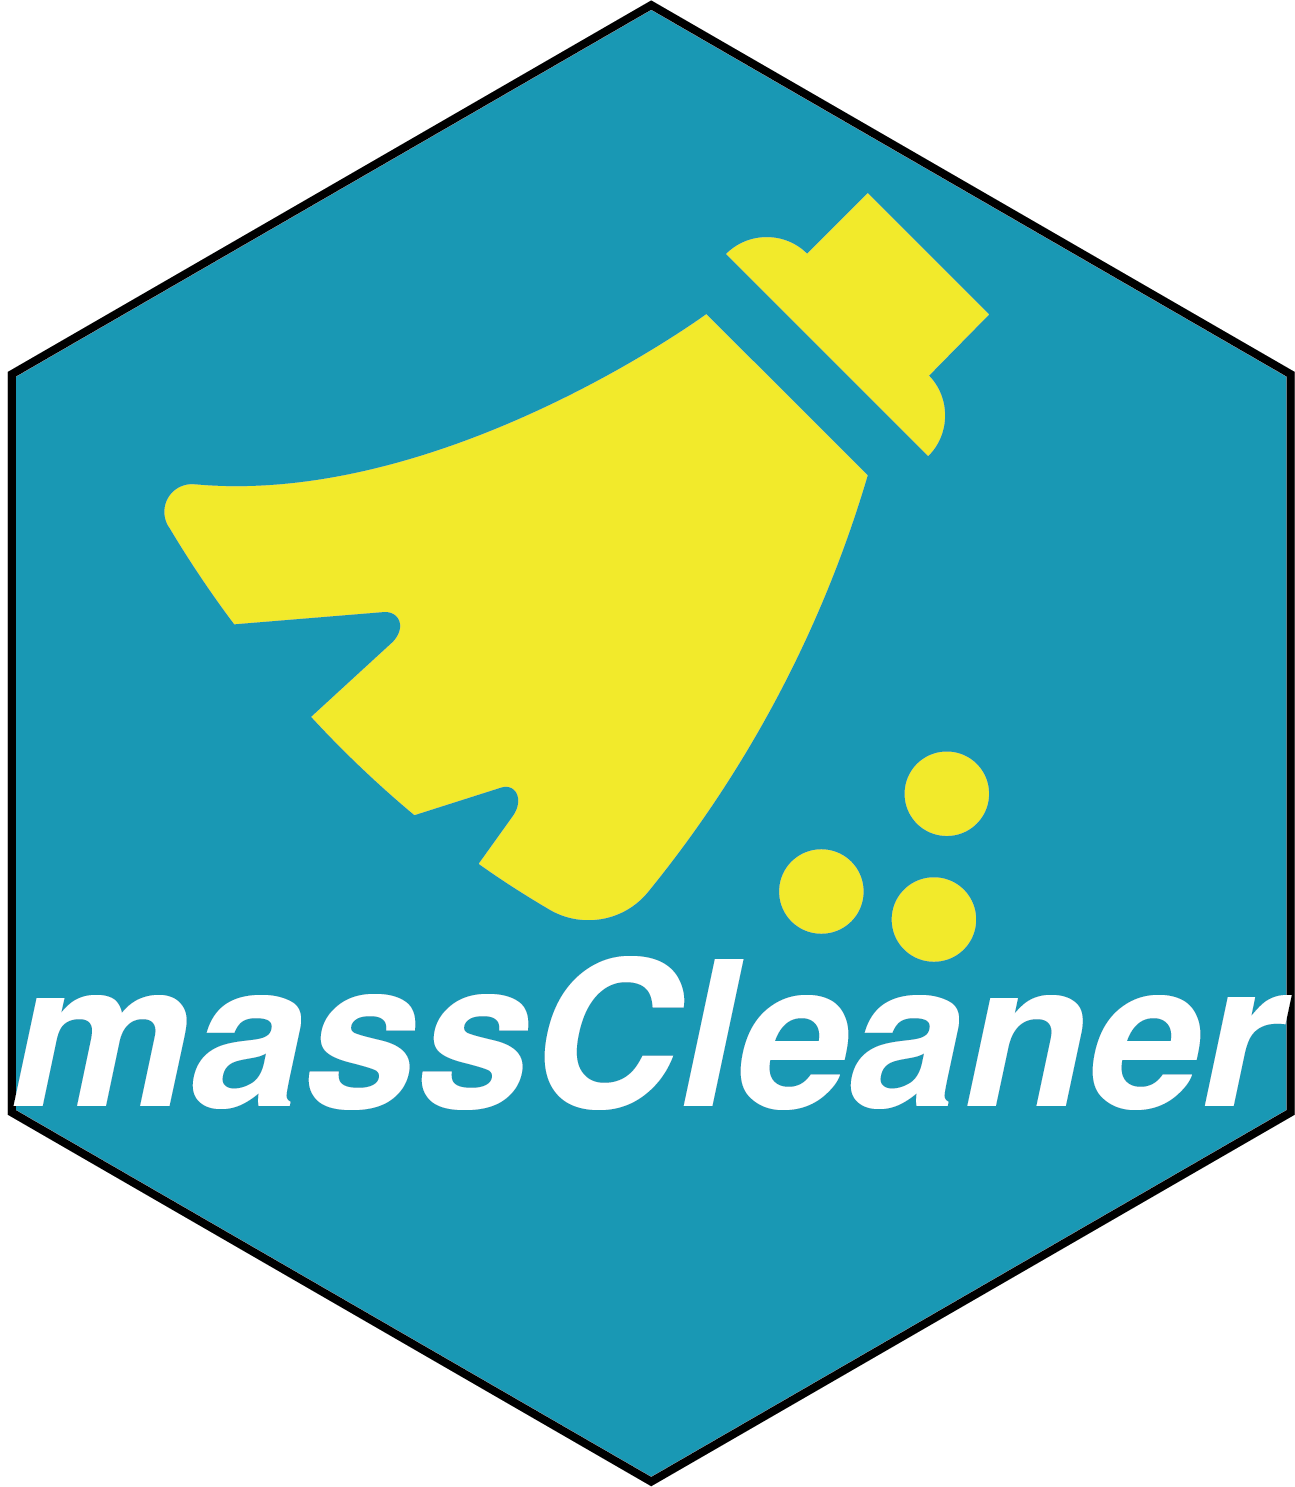 masscleaner hex sticker